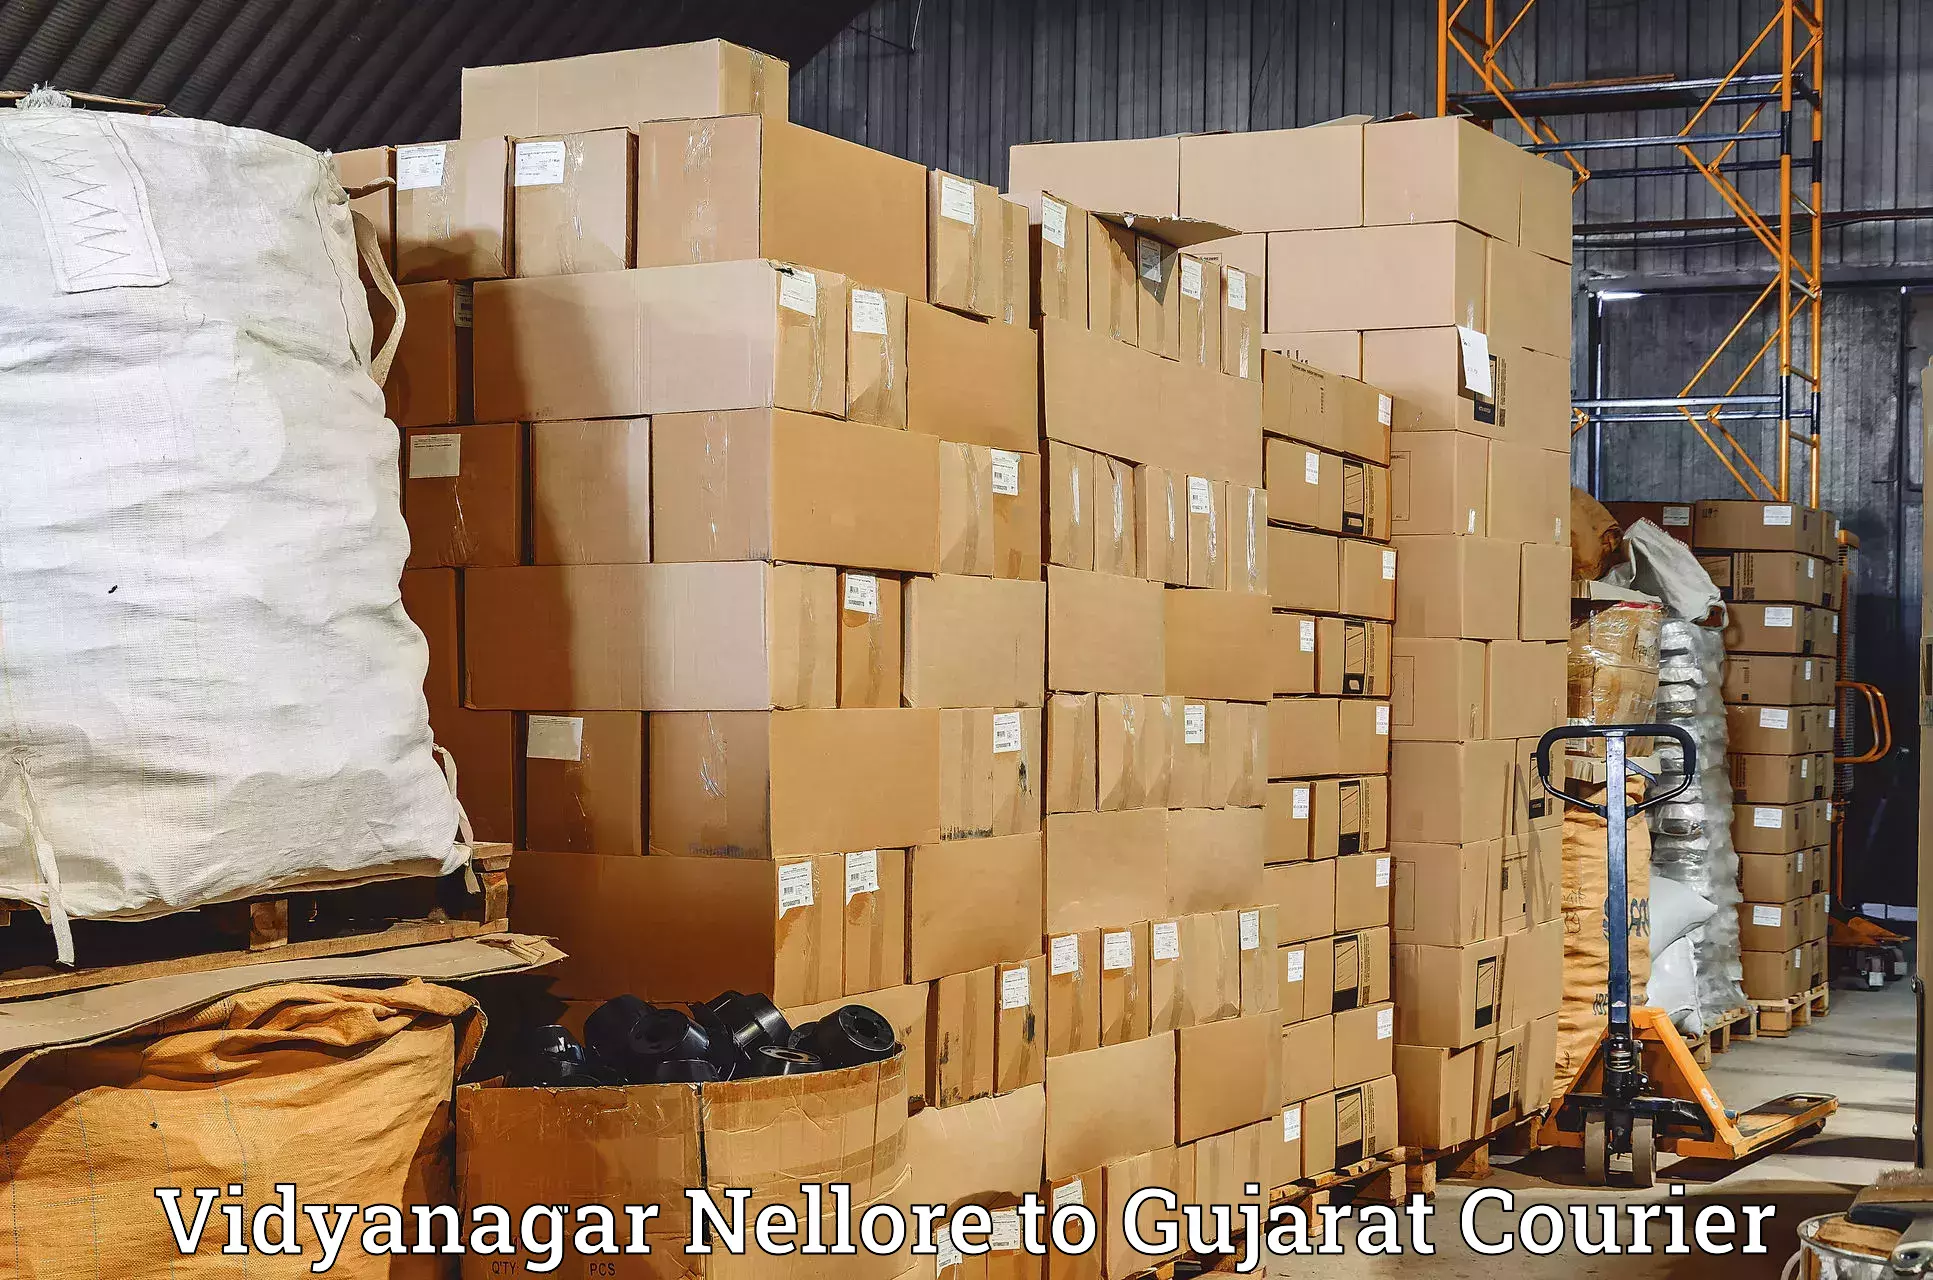 Modern courier technology Vidyanagar Nellore to Patan